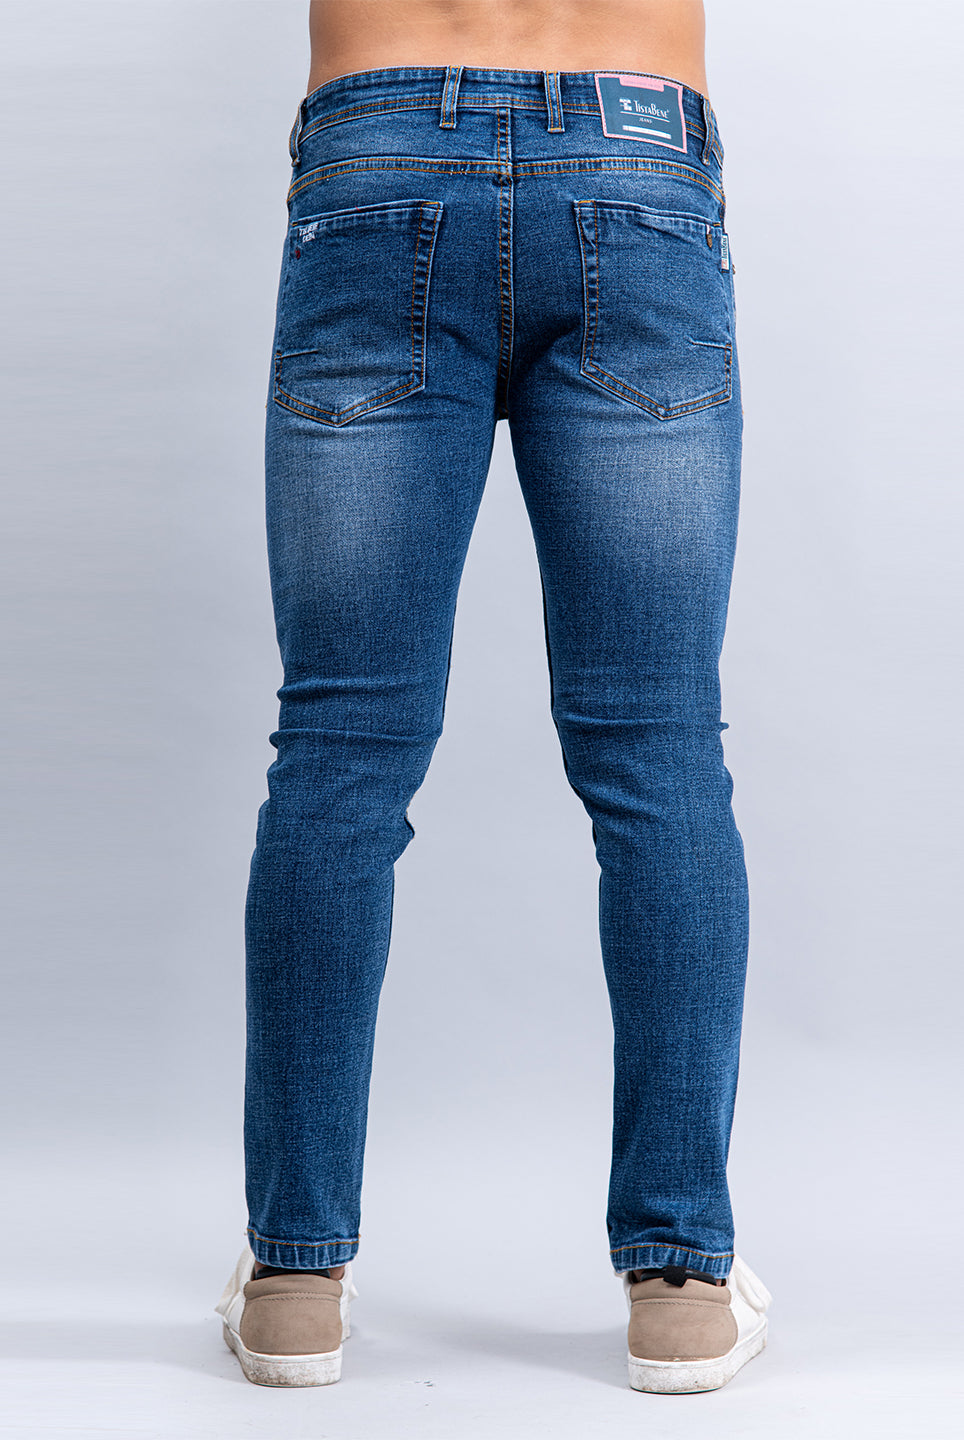 original denim jeans